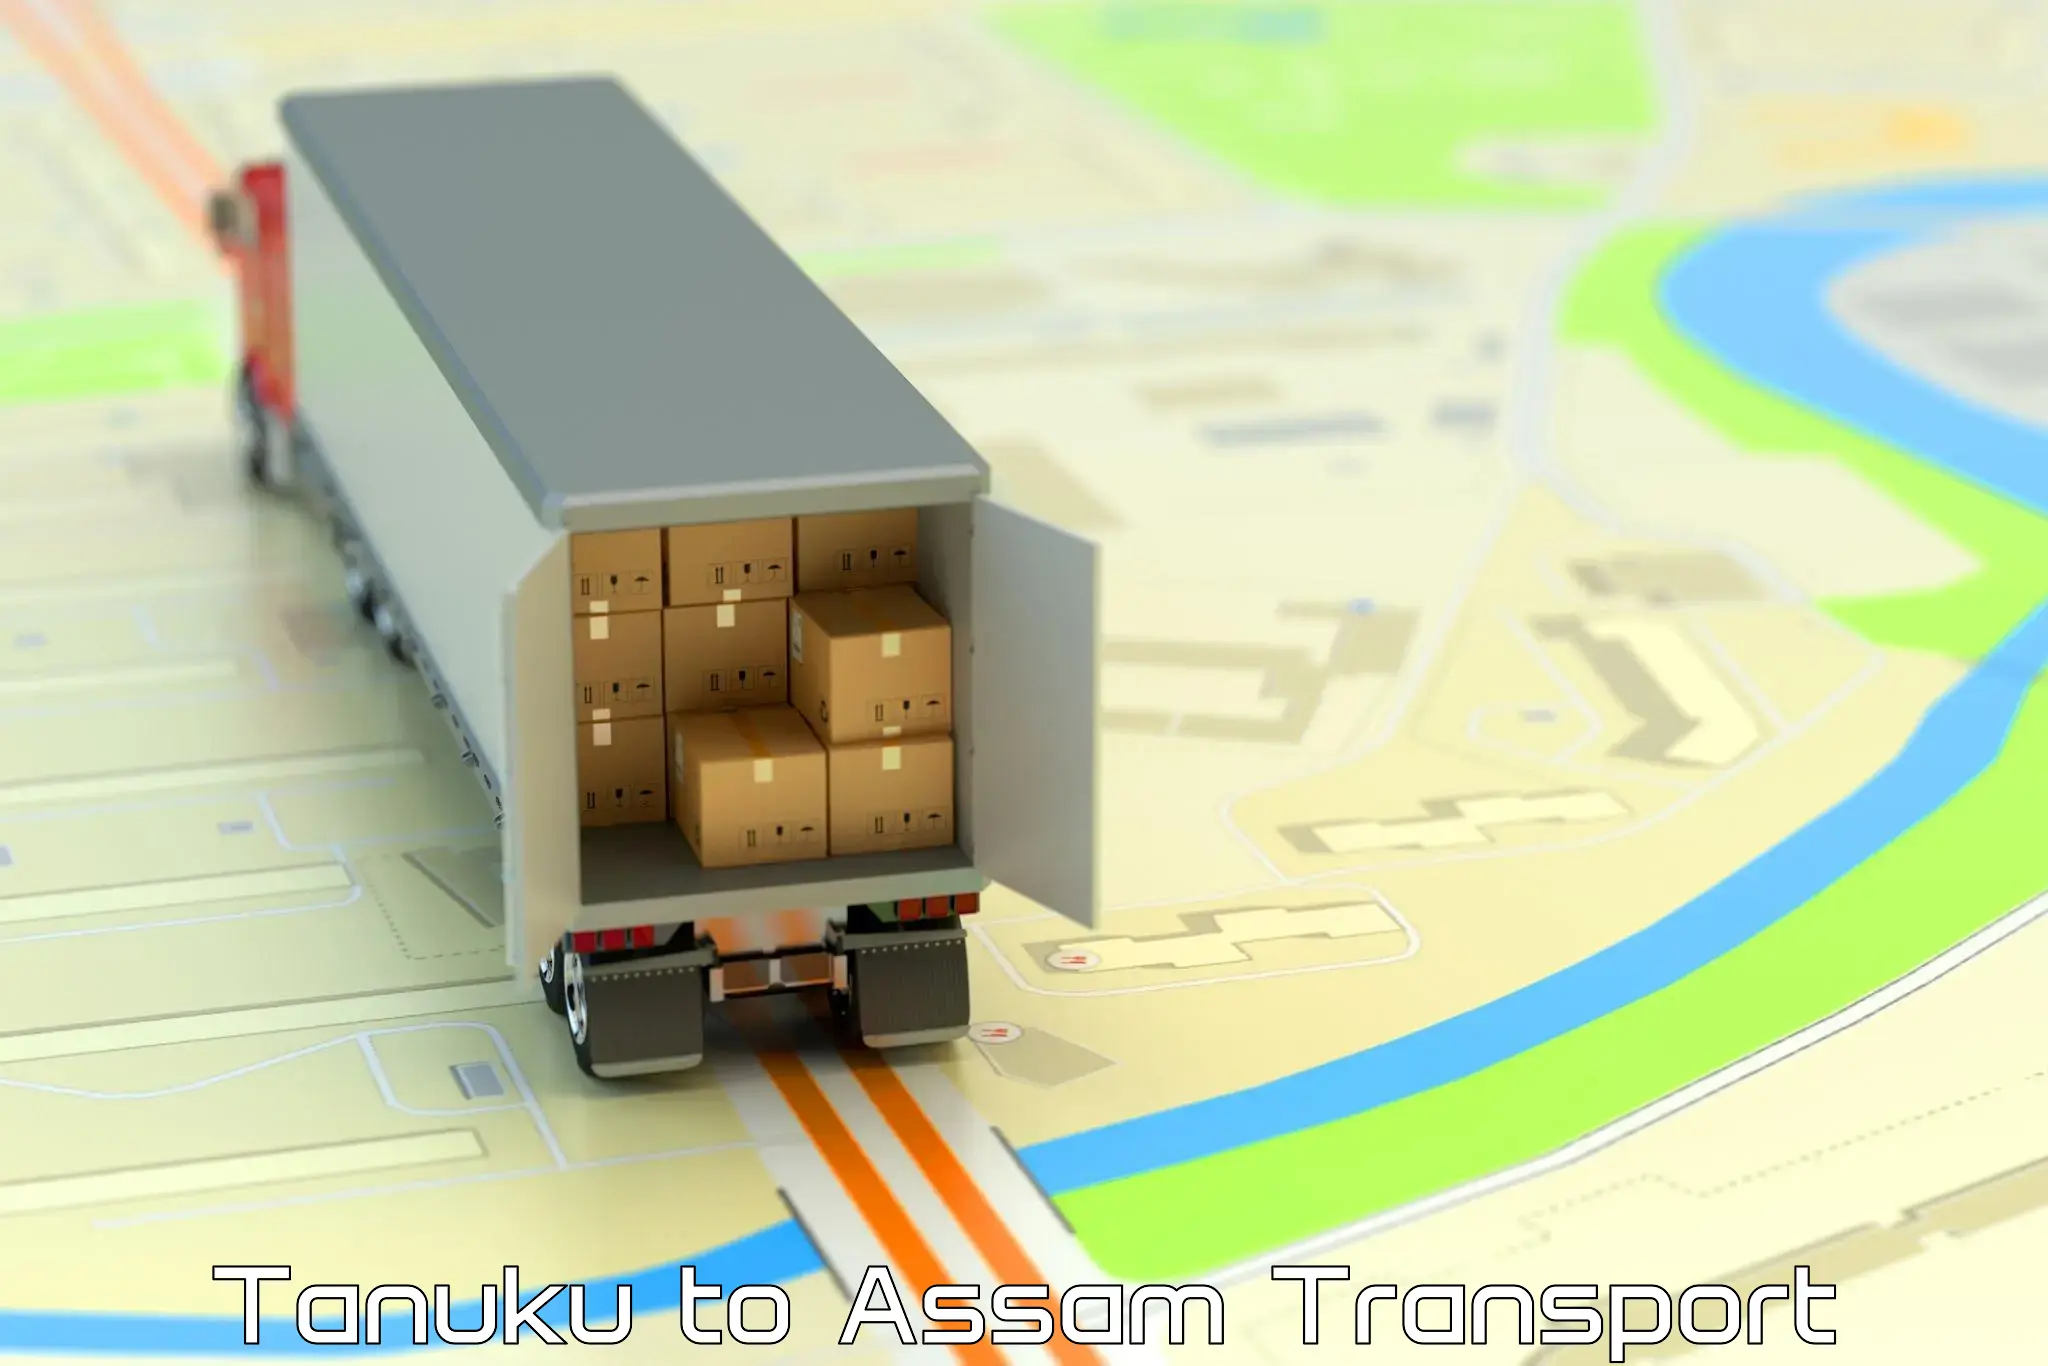 Logistics transportation services Tanuku to Gossaigaon